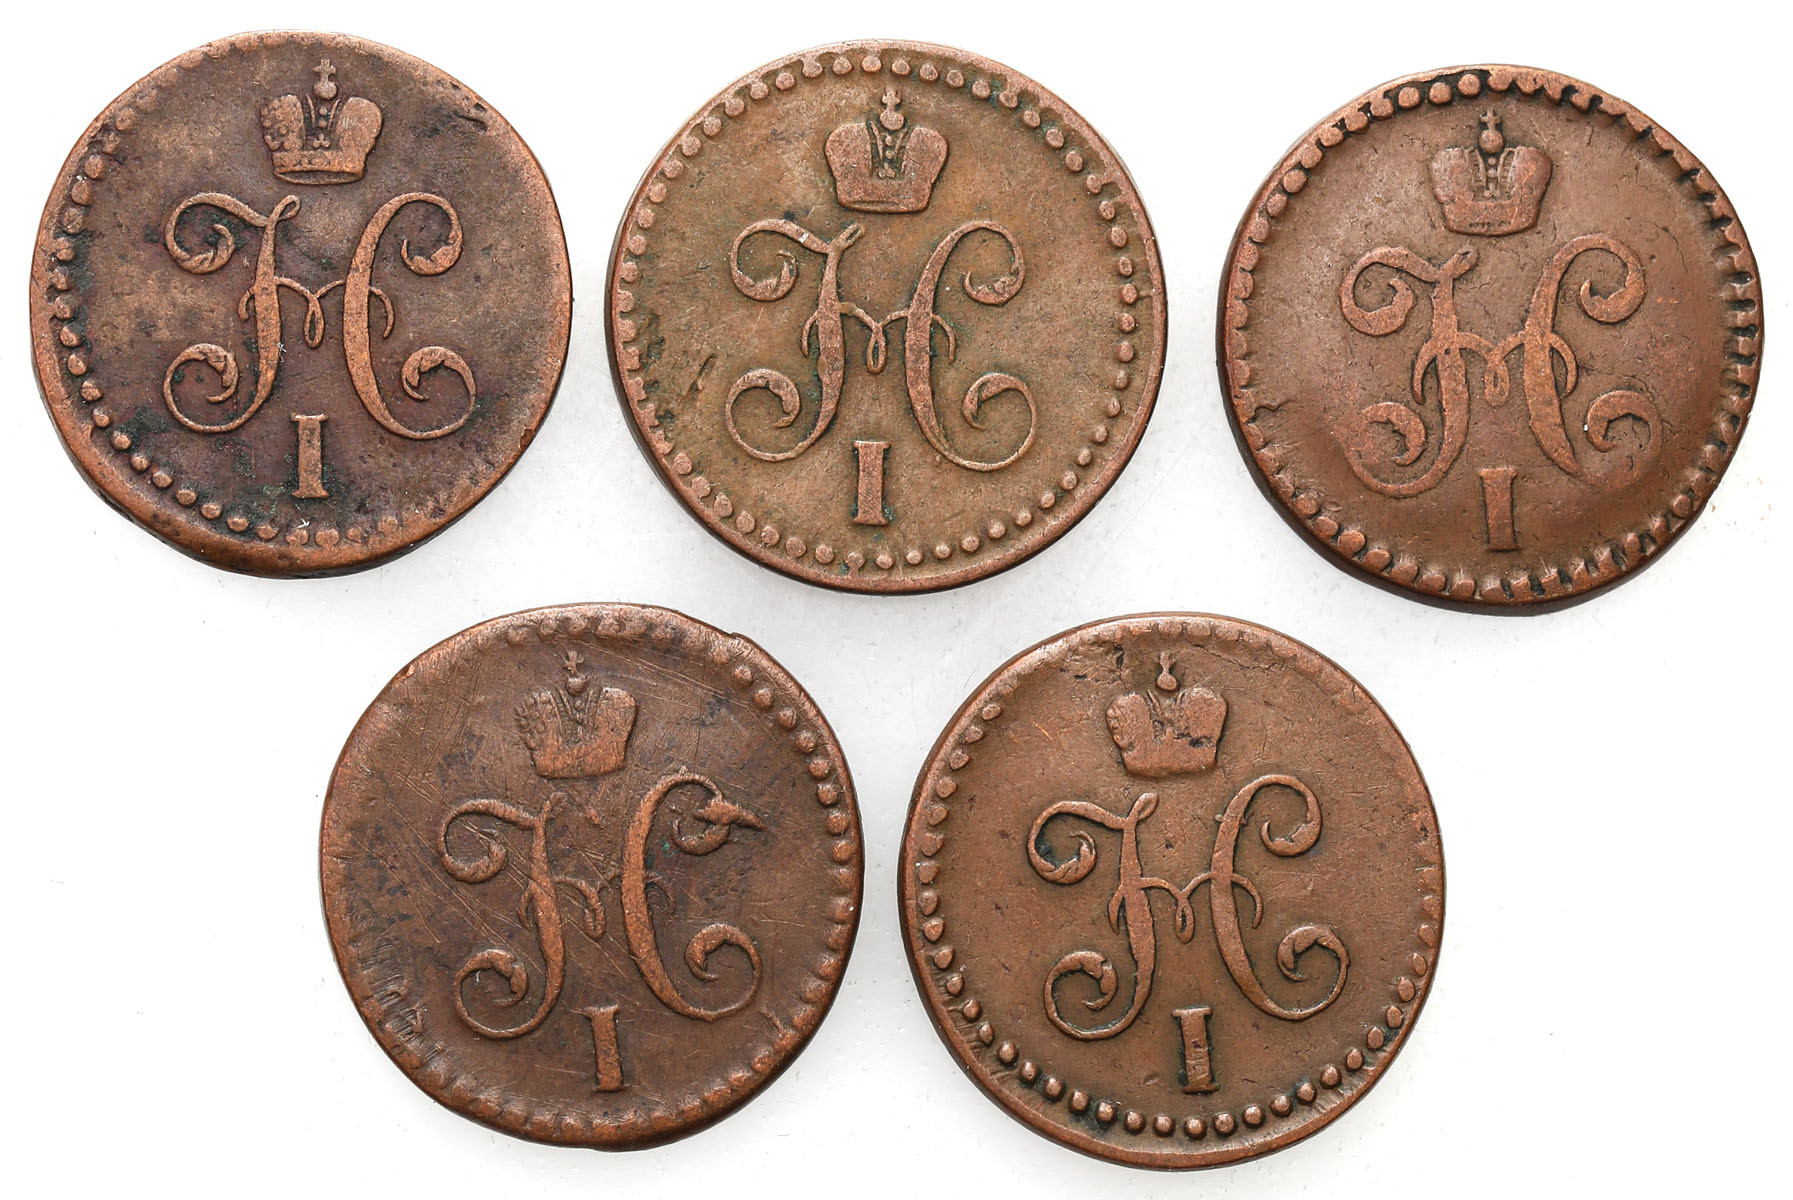 Rosja, Mikołaj I. 1/2 kopiejki 1841 EM, Jekaterinburg, 1840-1845, CПM, Iżorsk, zestaw 5 monet